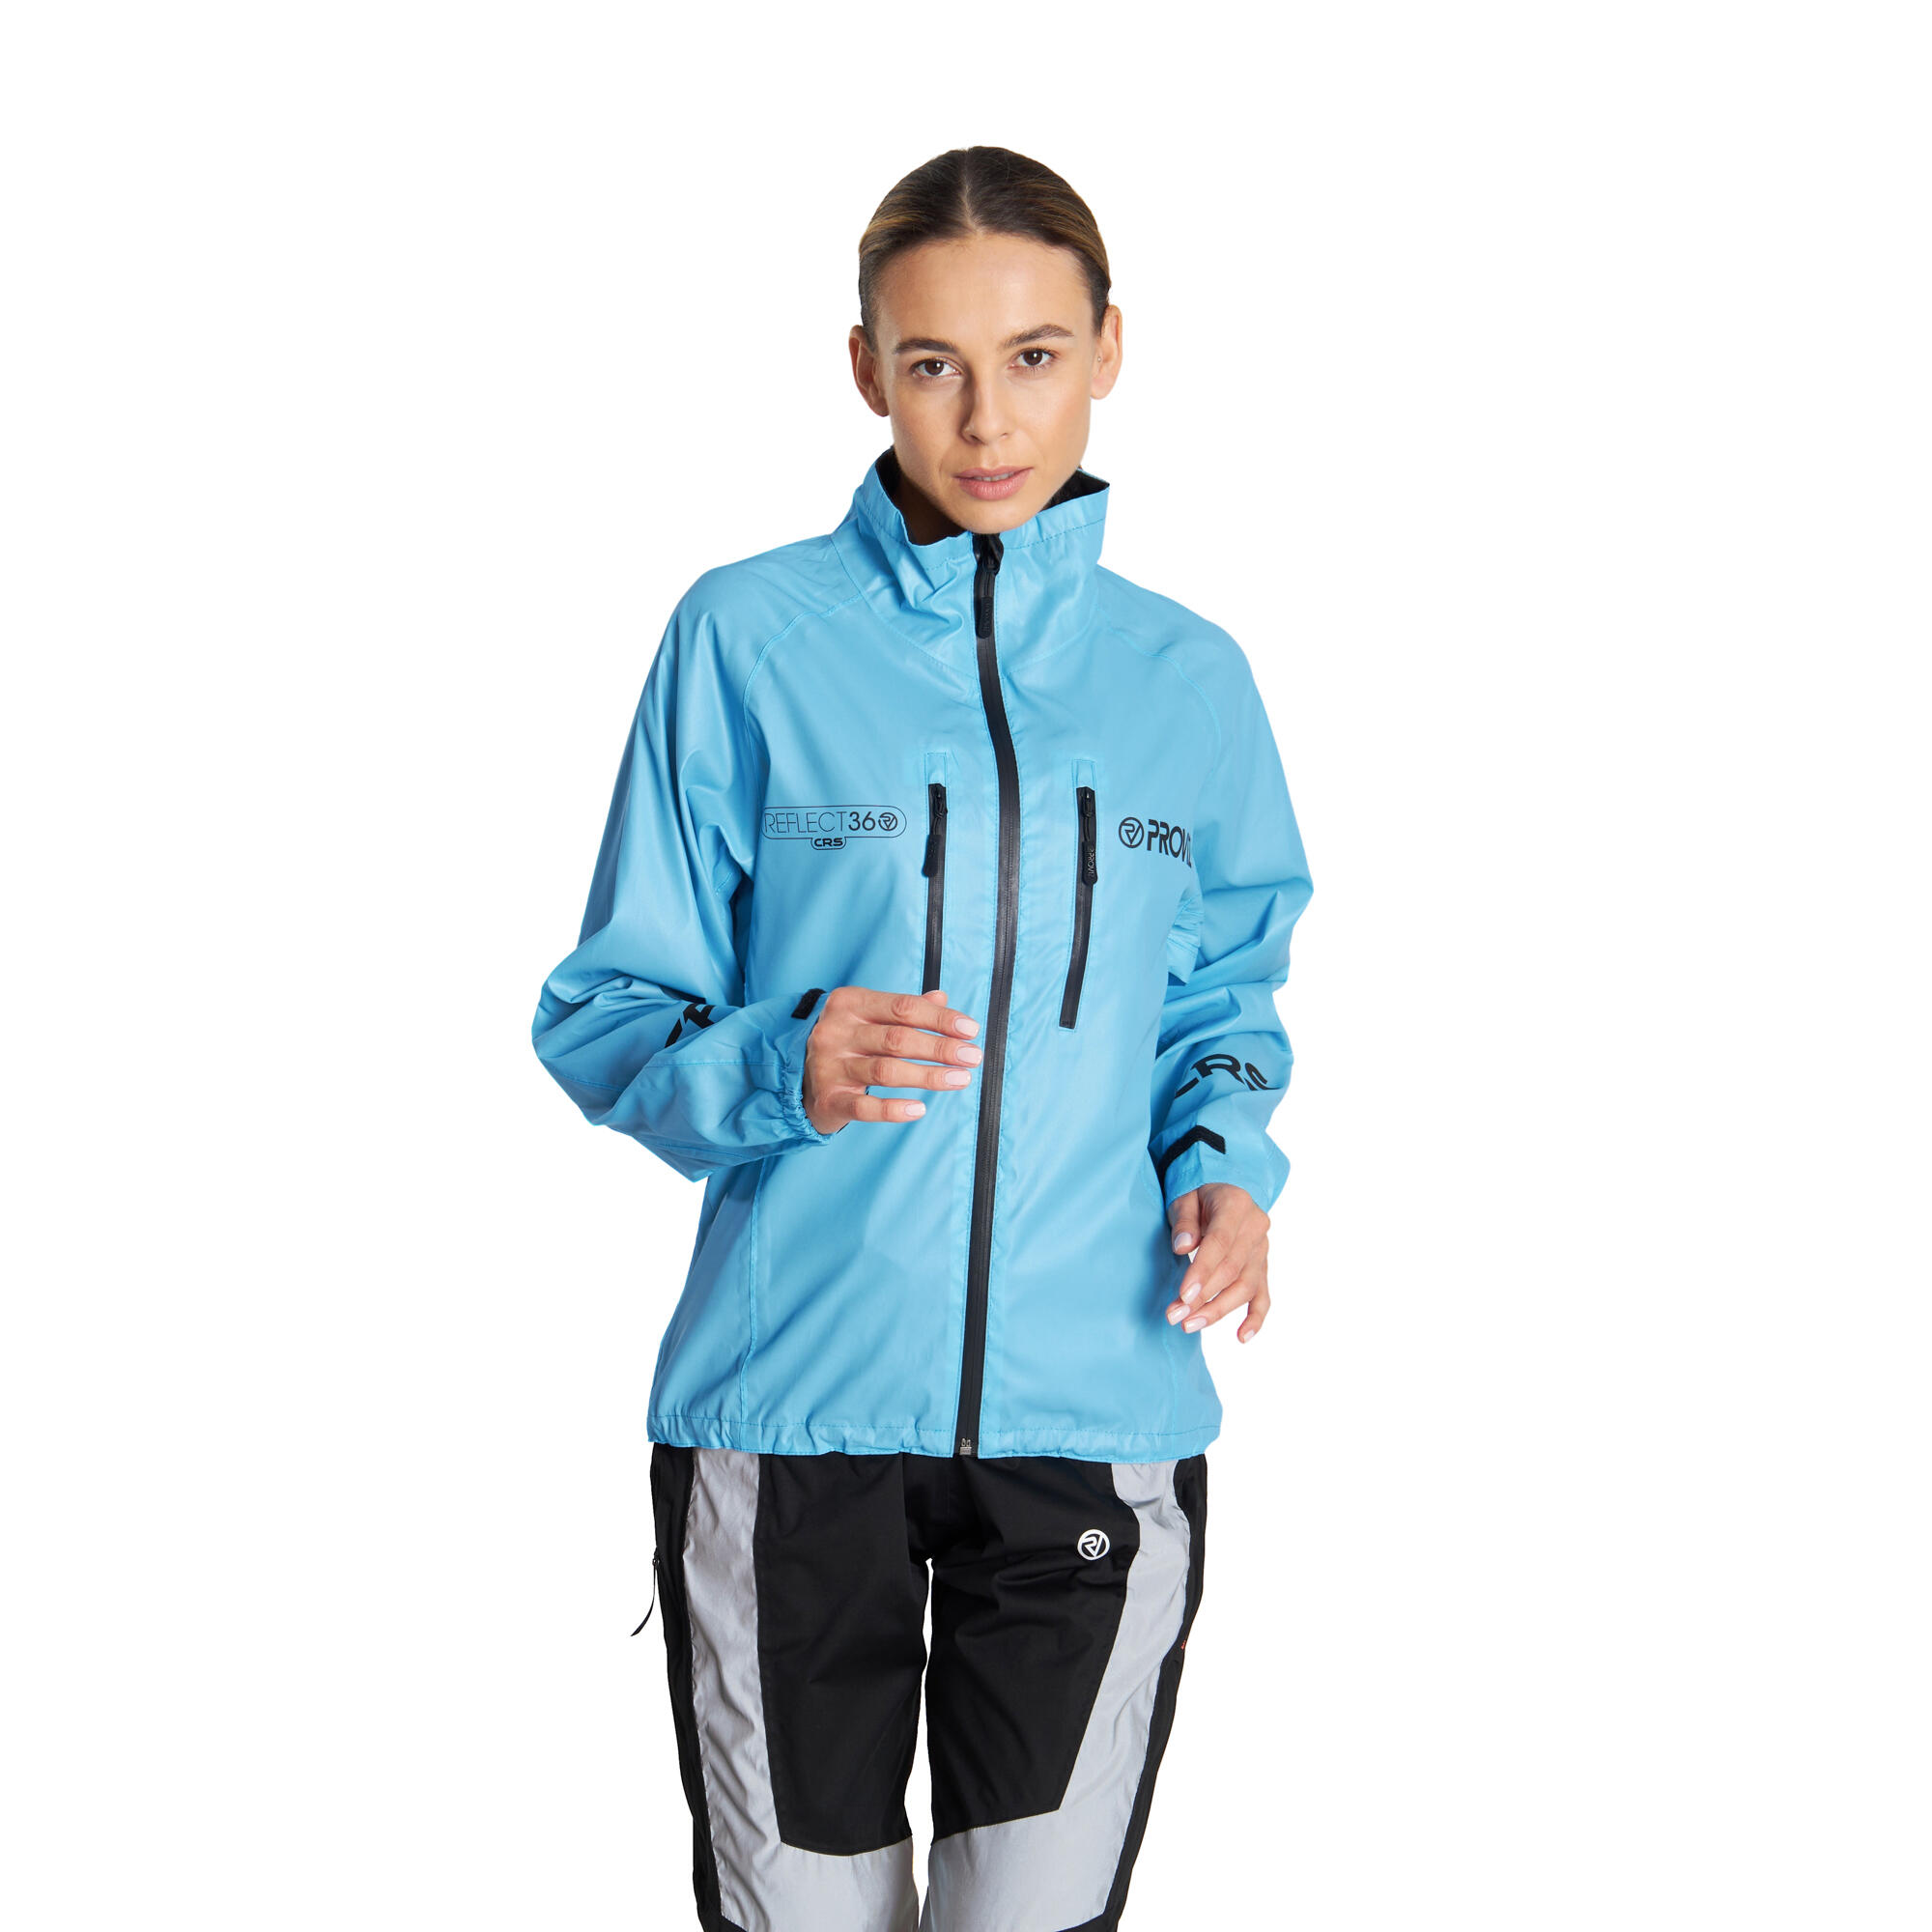 Proviz Women's REFLECT360 CRS Waterproof Reflective Cycling Jacket 7/7